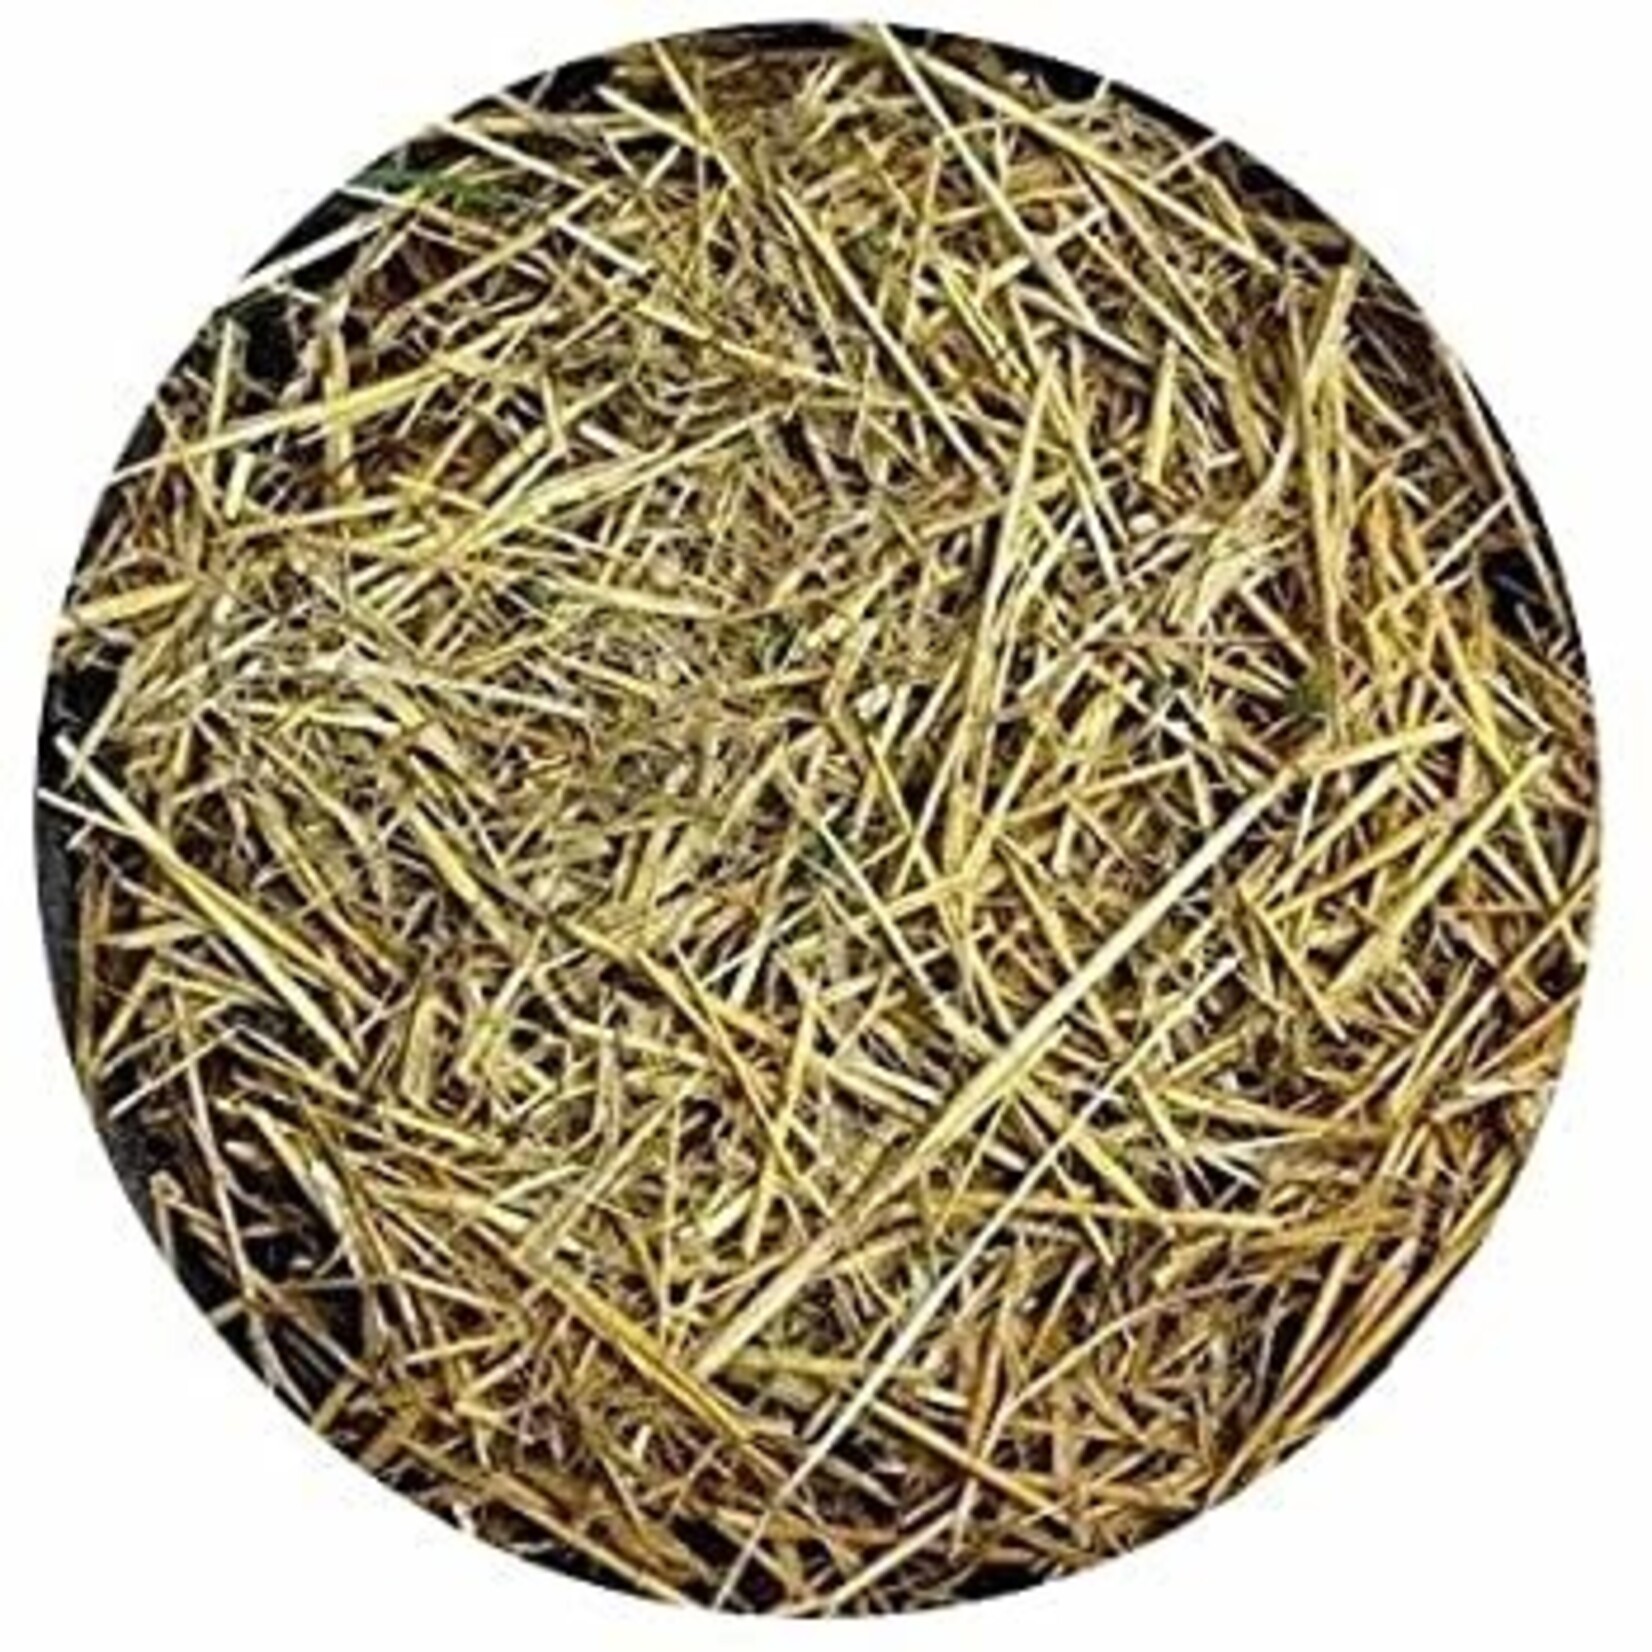 BuildASoil Barley Straw Mulch, 1/2 cu ft